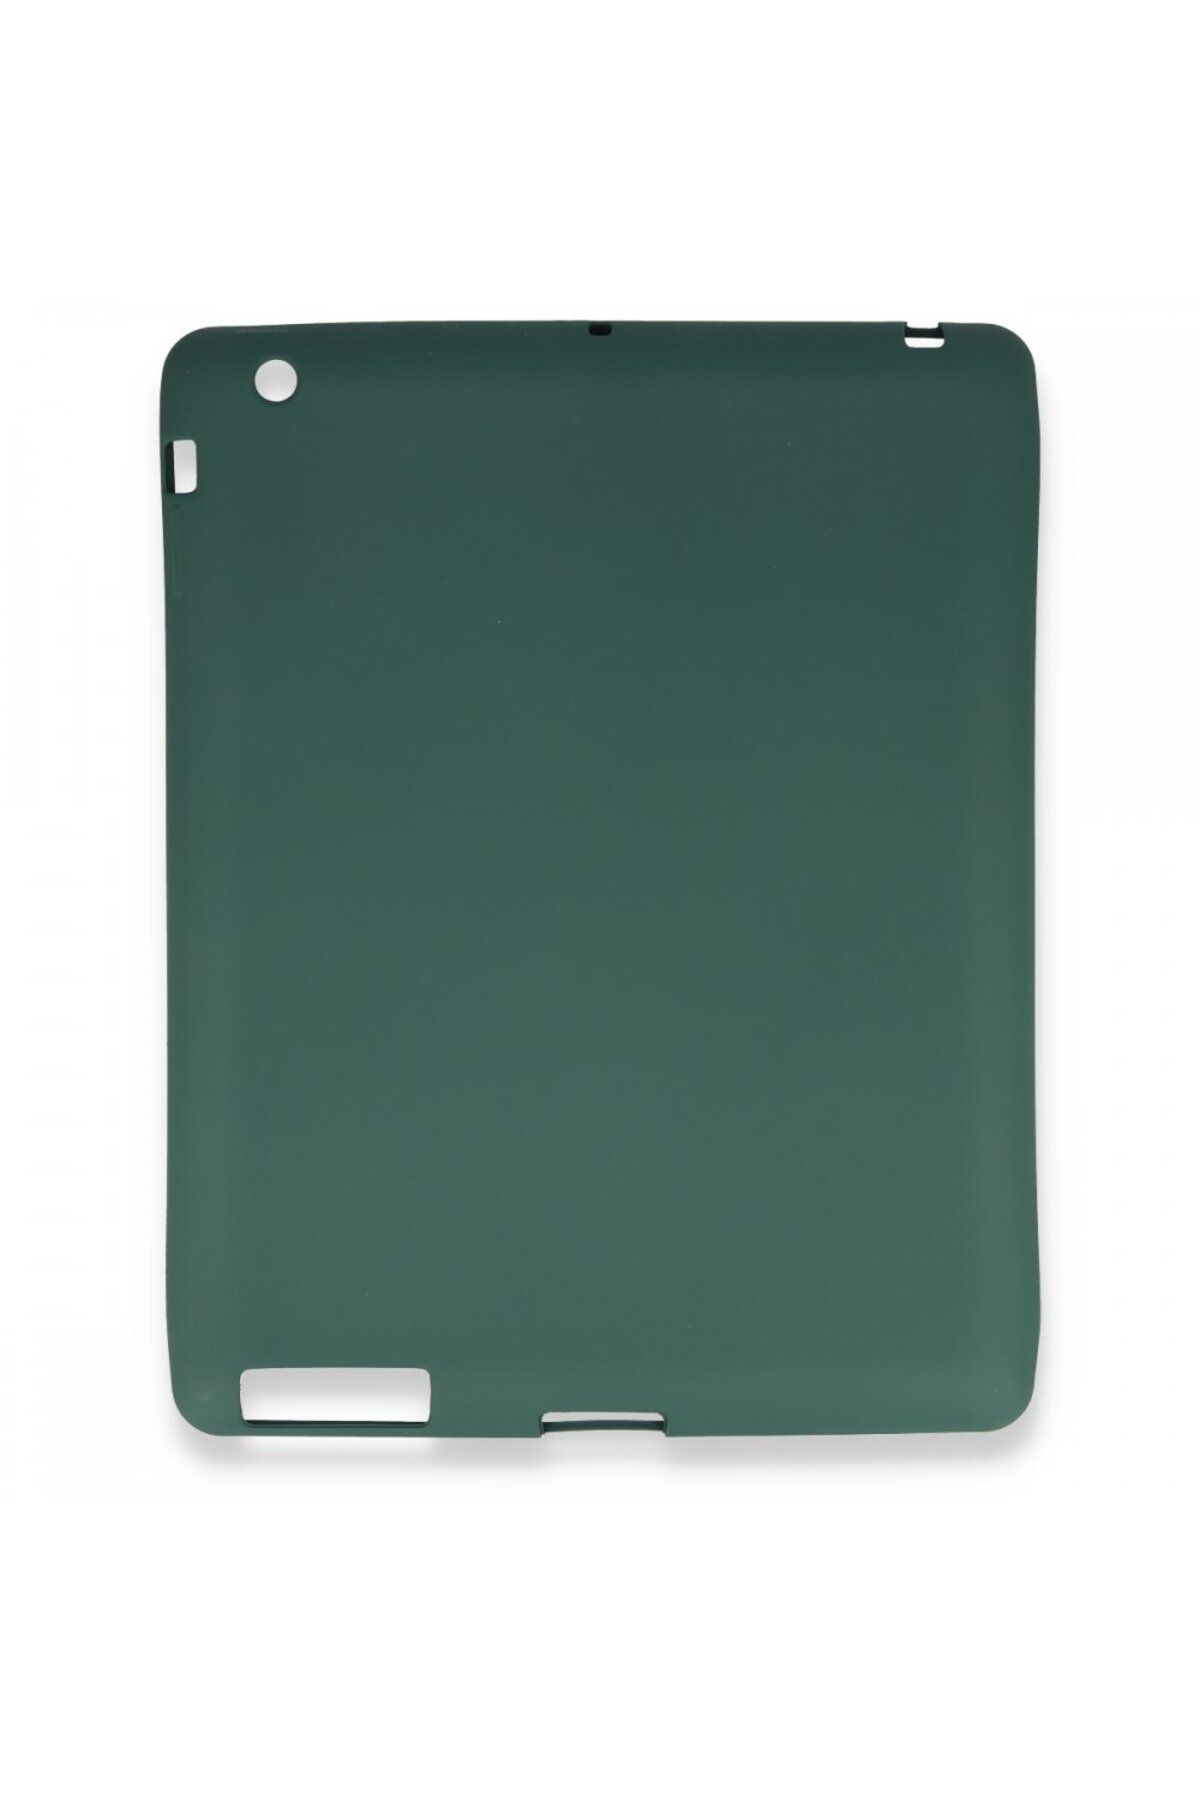 TREND İpad 2 9.7 Uyumlu Kılıf Evo Tablet Silikon - Yeşil